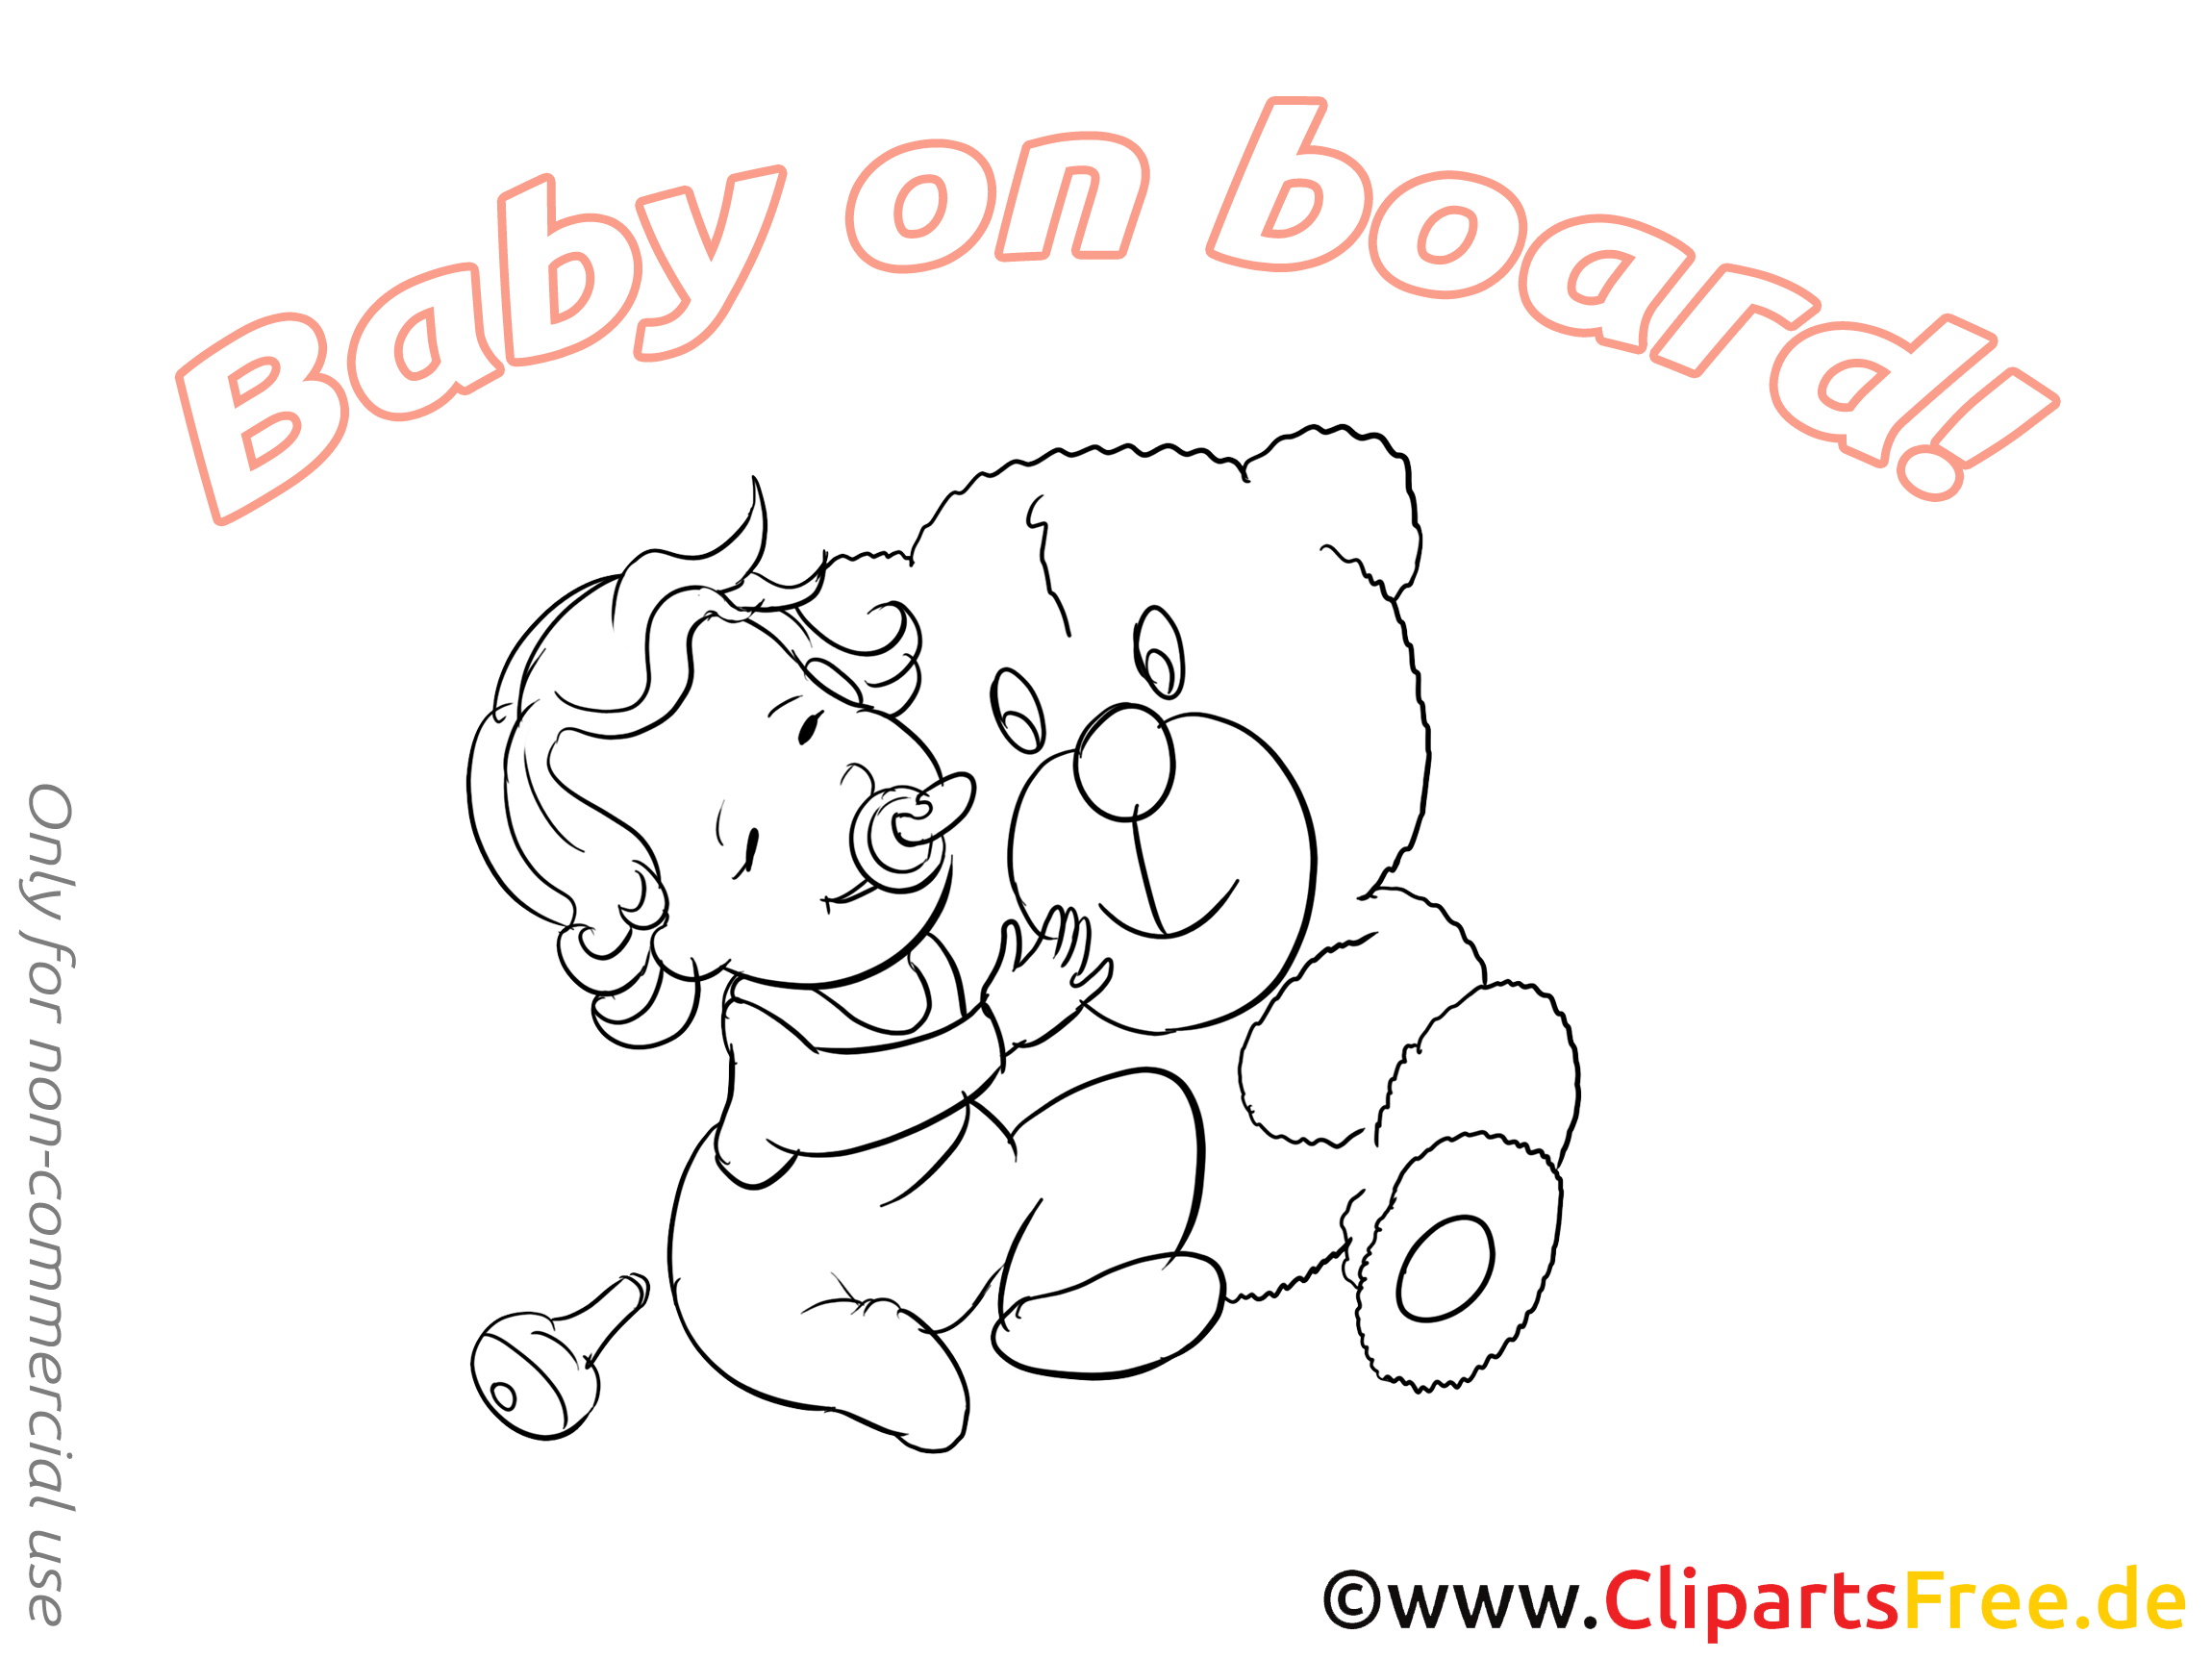 Bébé à bord illustration à imprimer ours en peluche